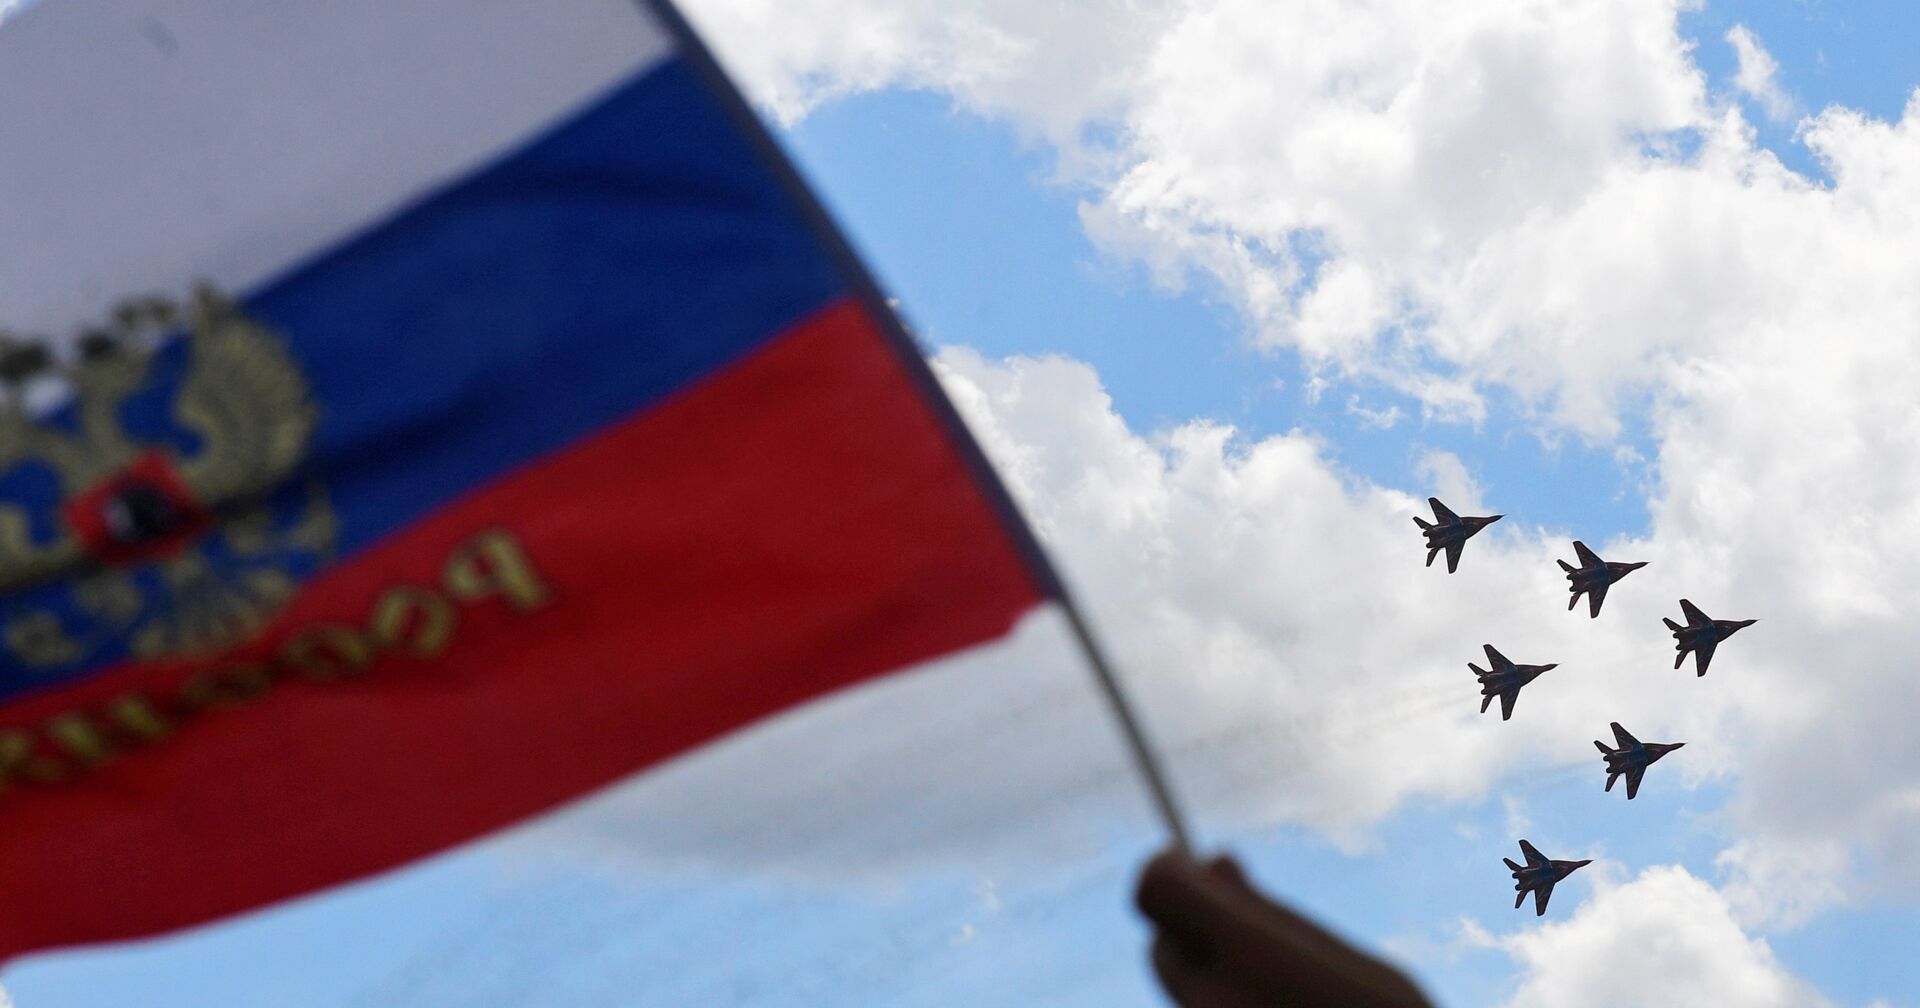 Многоцелевые истребители МиГ-29 пилотажной группы Стрижи выполняют демонстрационный полет на МАКС-2017 в Жуковском. 23 июля 2017 - ИноСМИ, 1920, 27.12.2020